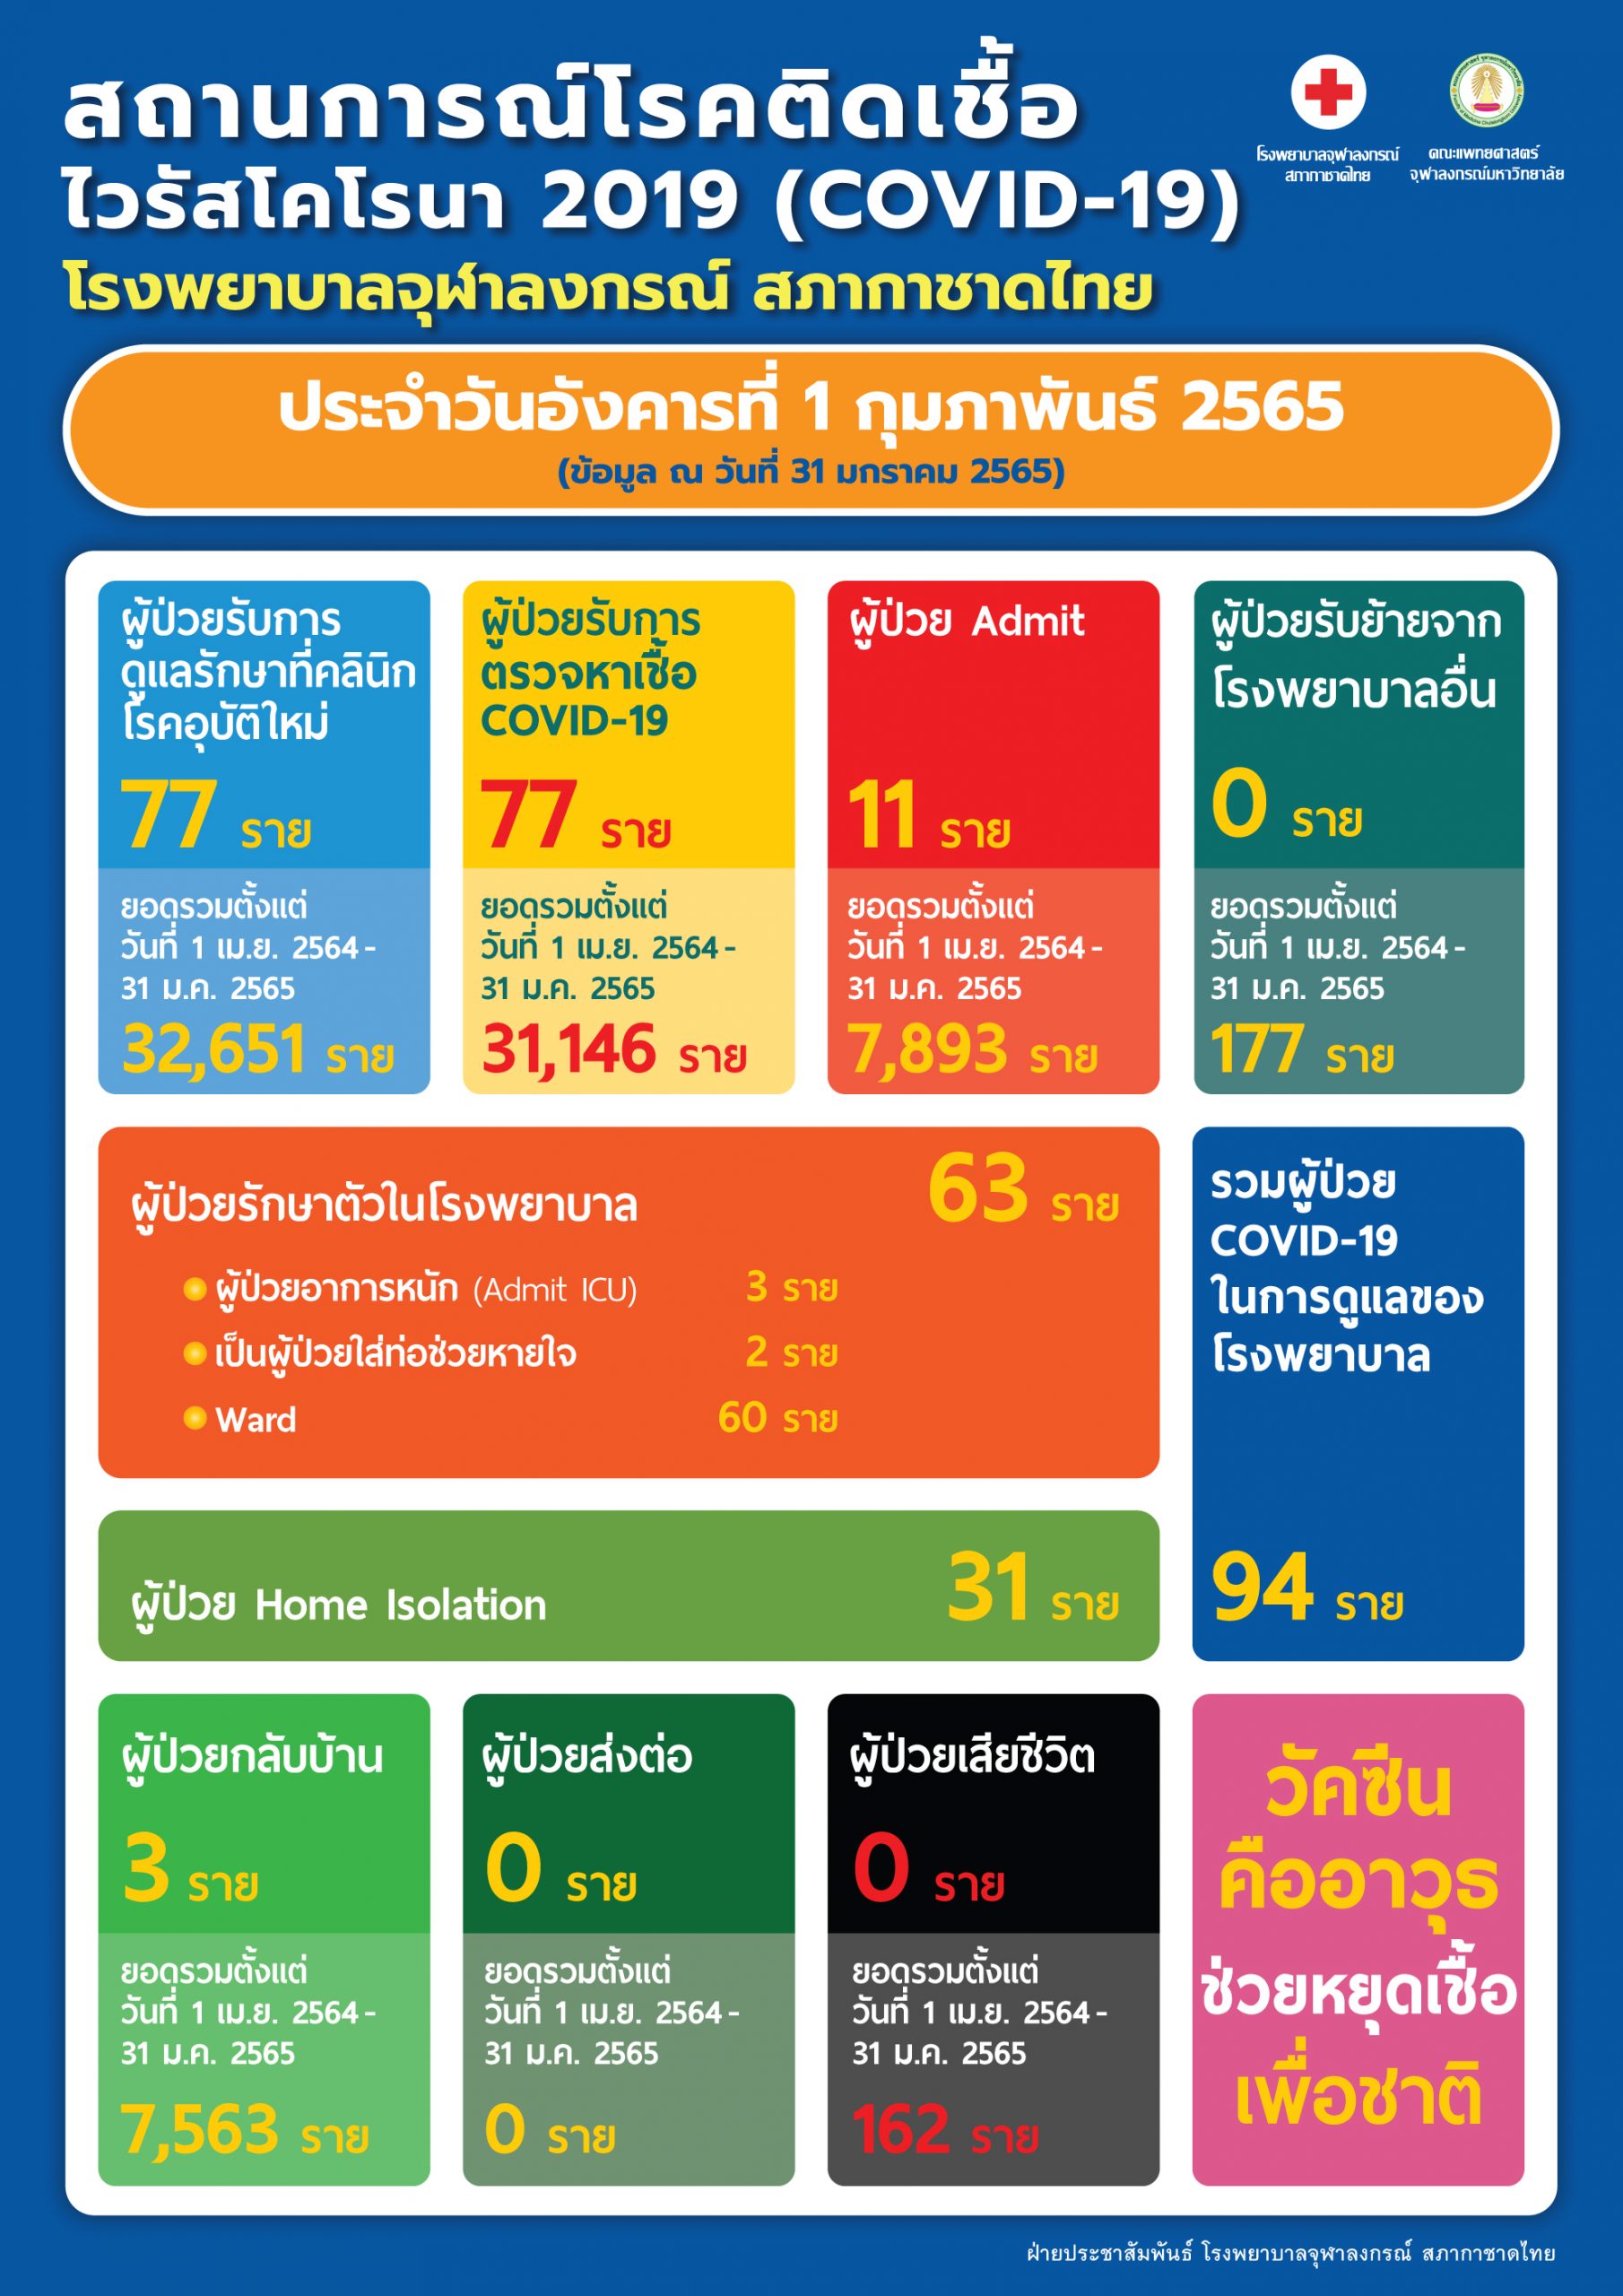 สถานการณ์โรคติดเชื้อไวรัสโคโรนา 2019 (COVID-19) โรงพยาบาลจุฬาลงกรณ์ สภากาชาดไทย ประจำวันอังคารที่ 1 กุมภาพันธ์ 2565